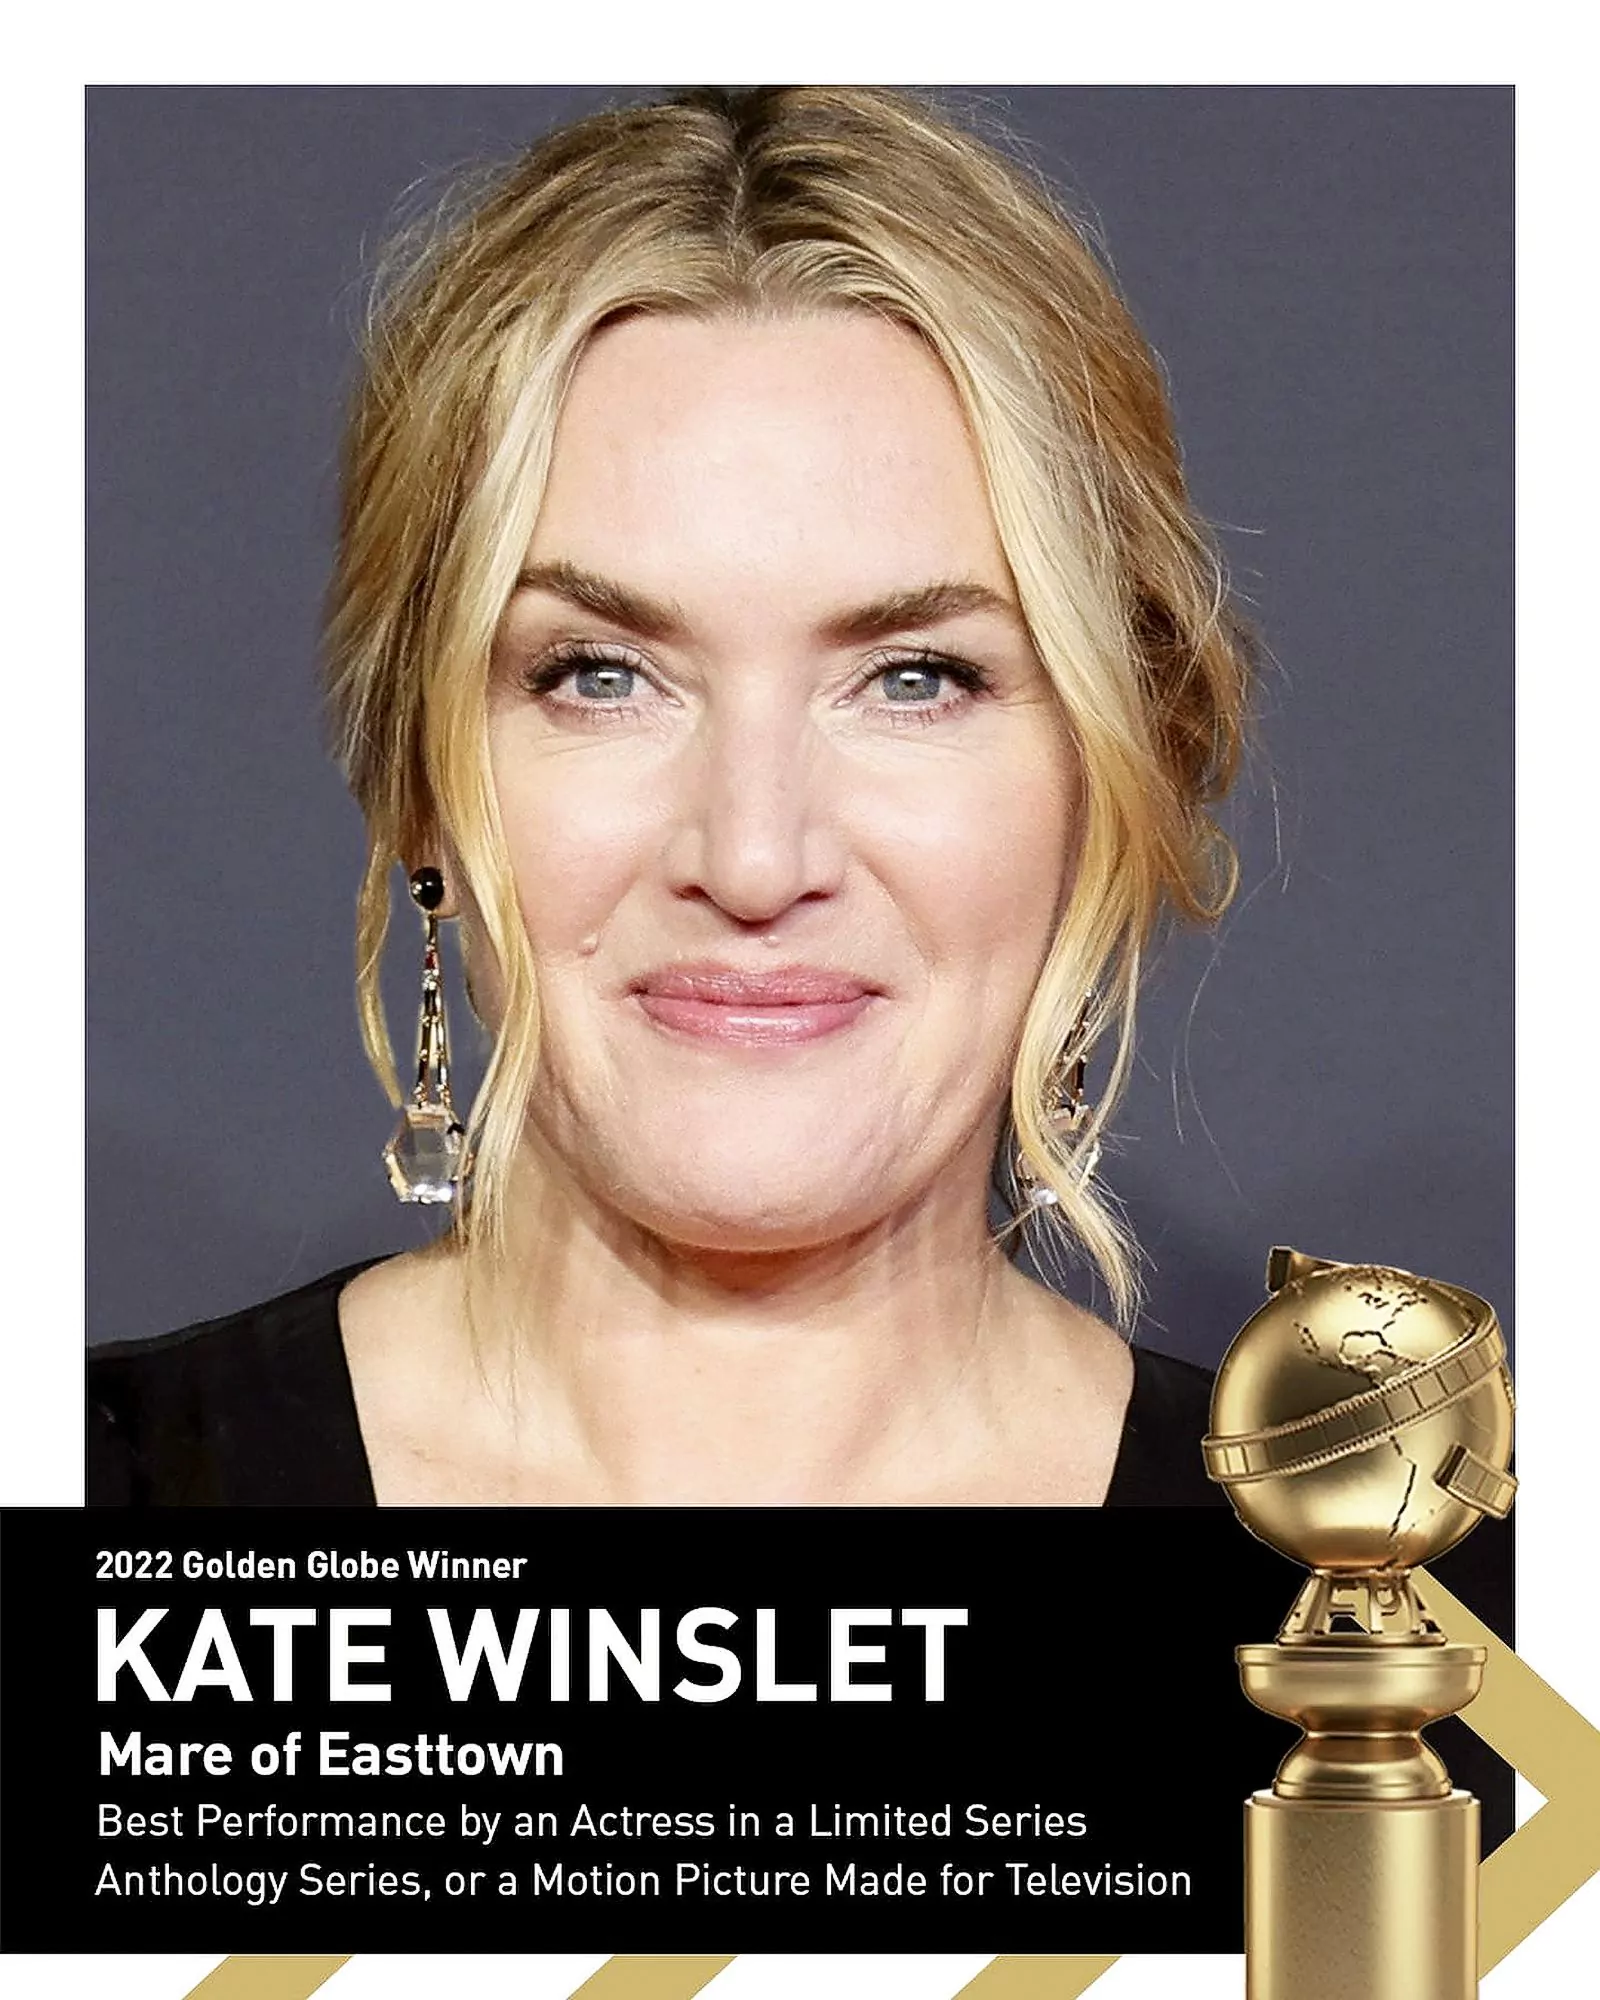 Кейт Уинслет на фотографии 79-й церемонии вручения премии «Золотой глобус» в социальных сетях, 9 декабря 2022 г.